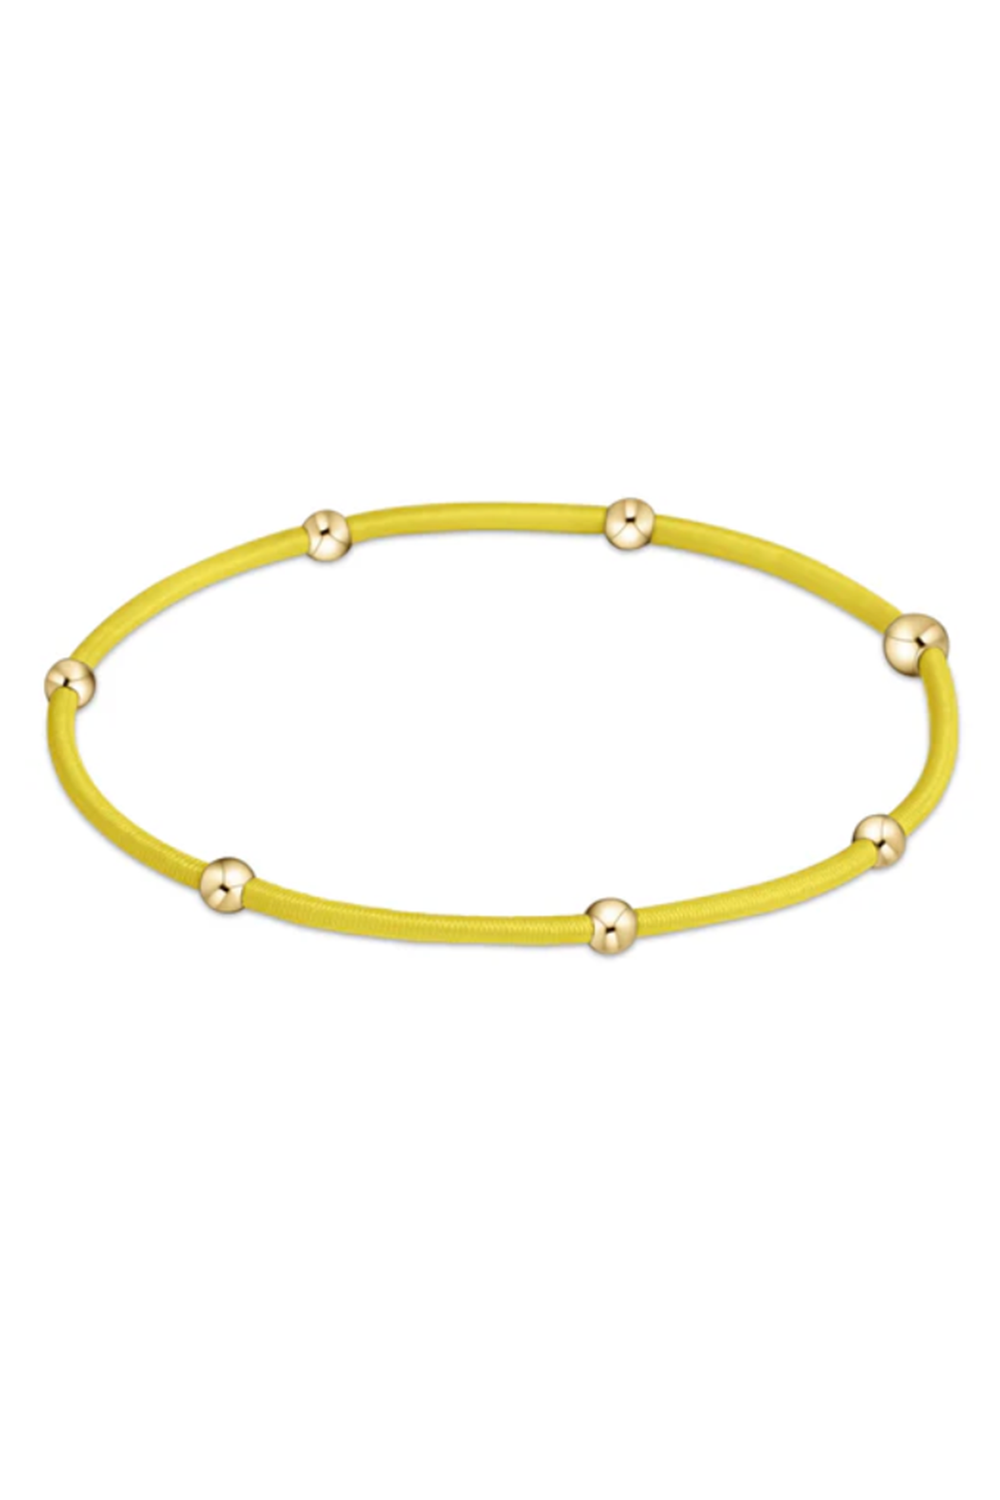 EN Essentials Bracelet - Yellow